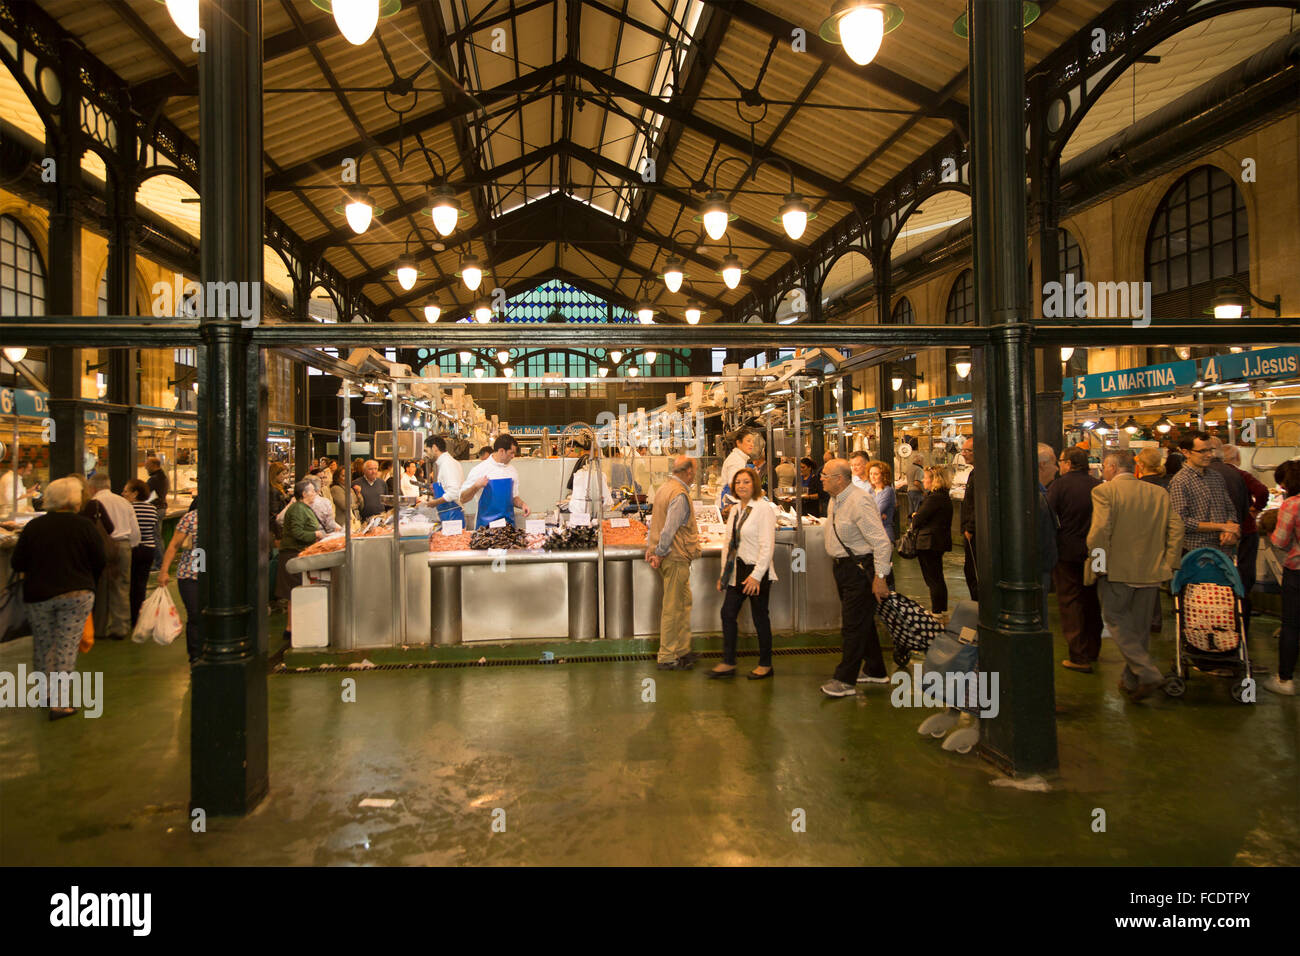 Les gens à l'intérieur des stalles shopping poissonnier marché couvert historique immeuble, Jerez de la Frontera, Espagne Banque D'Images